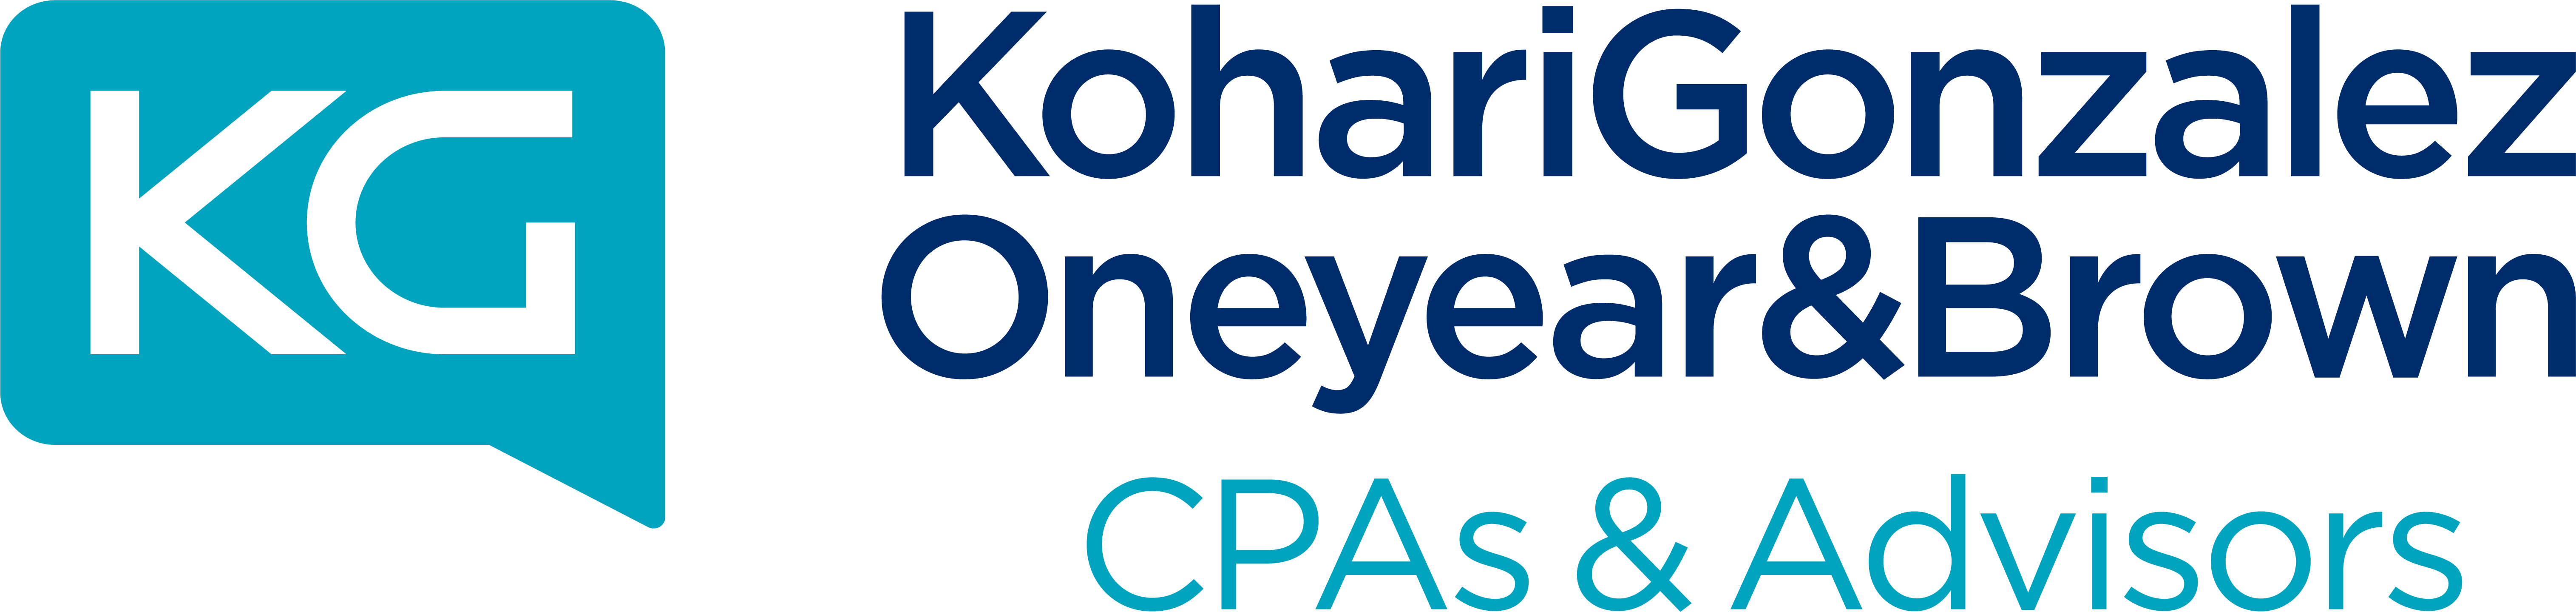 KG CPA Transparent Logo